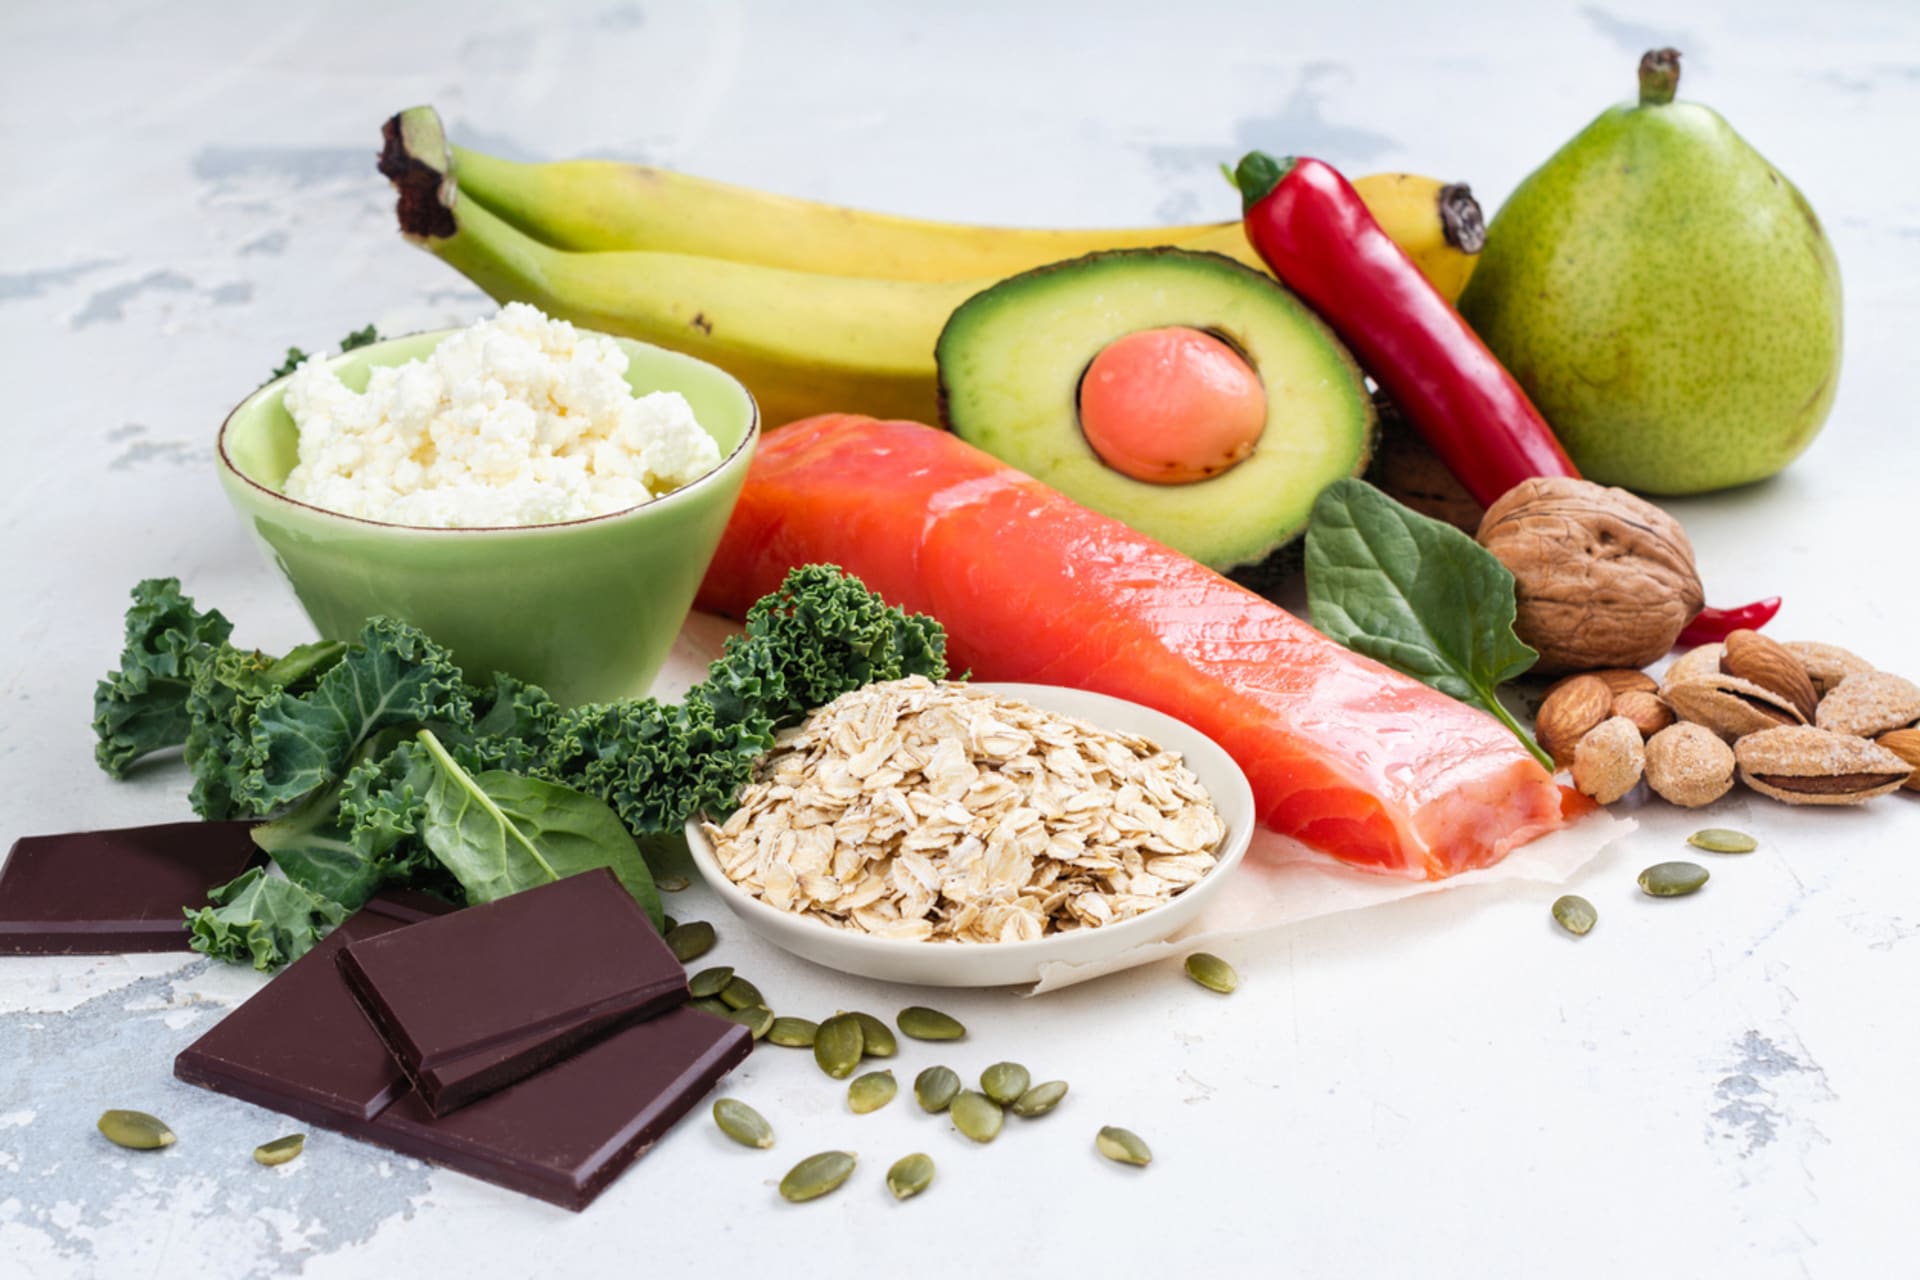 Jídelníček by měl obsahovat dostatek všech potřebných živin, jako jsou bílkoviny, komplexní sacharidy i zdravé tuky.